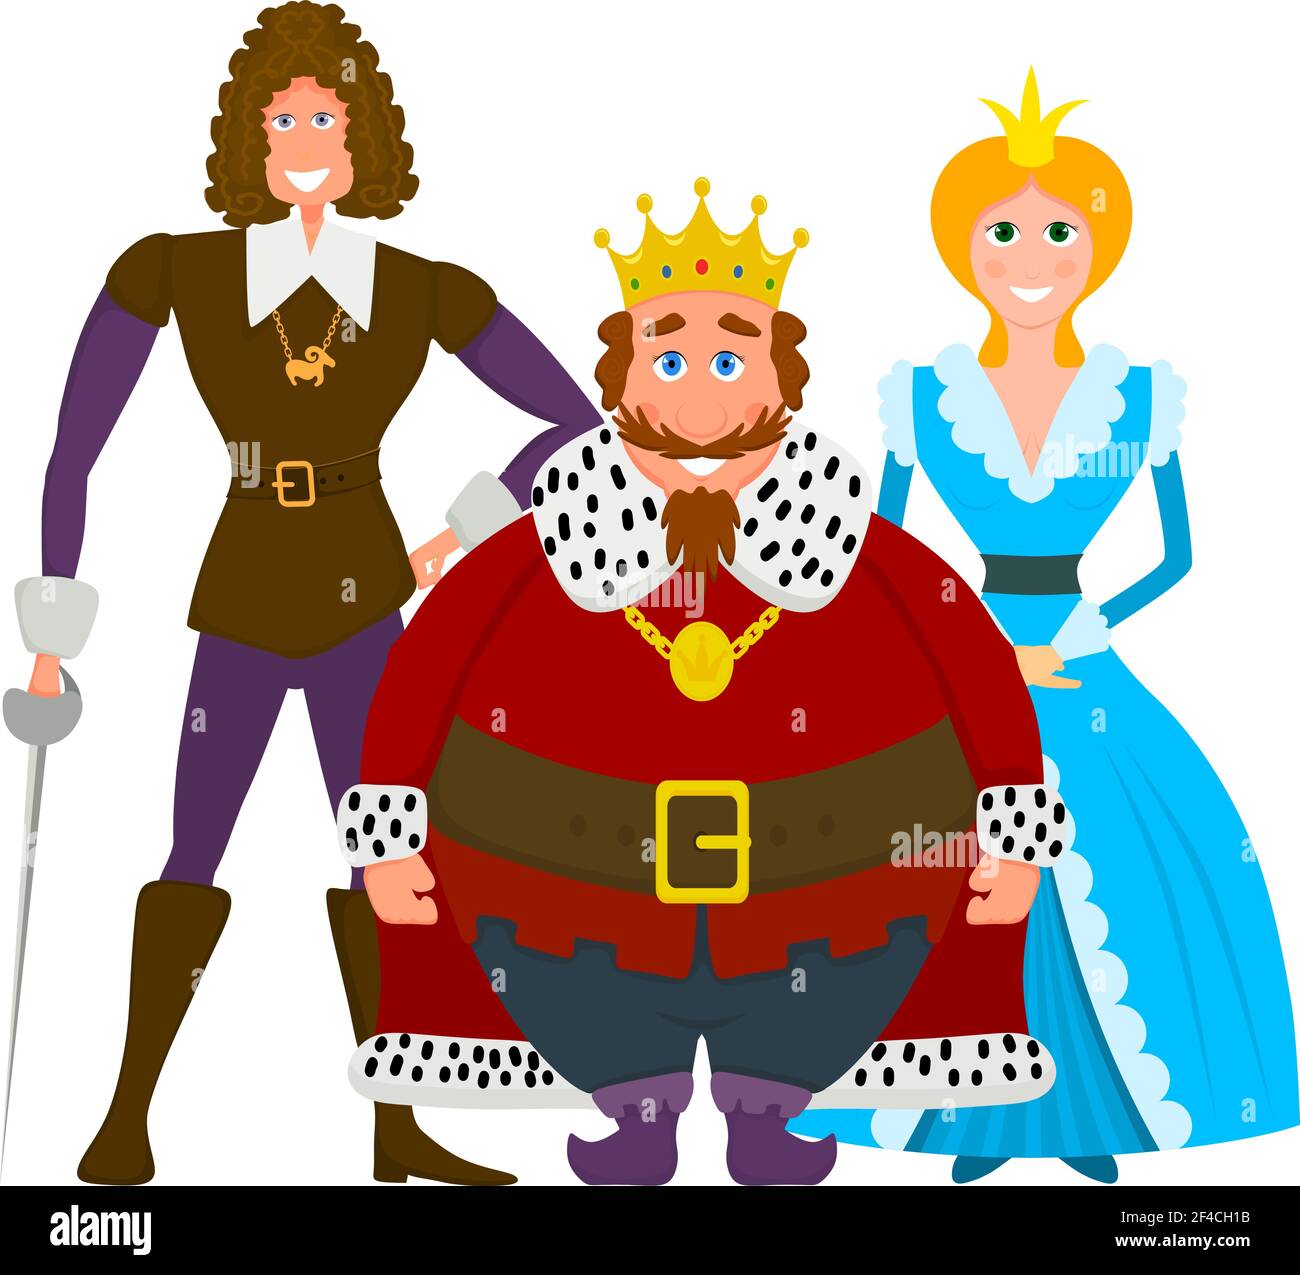 Image couleur d'une famille royale sur fond blanc. Lit King Size, princesse et prince. Illustration vectorielle Illustration de Vecteur